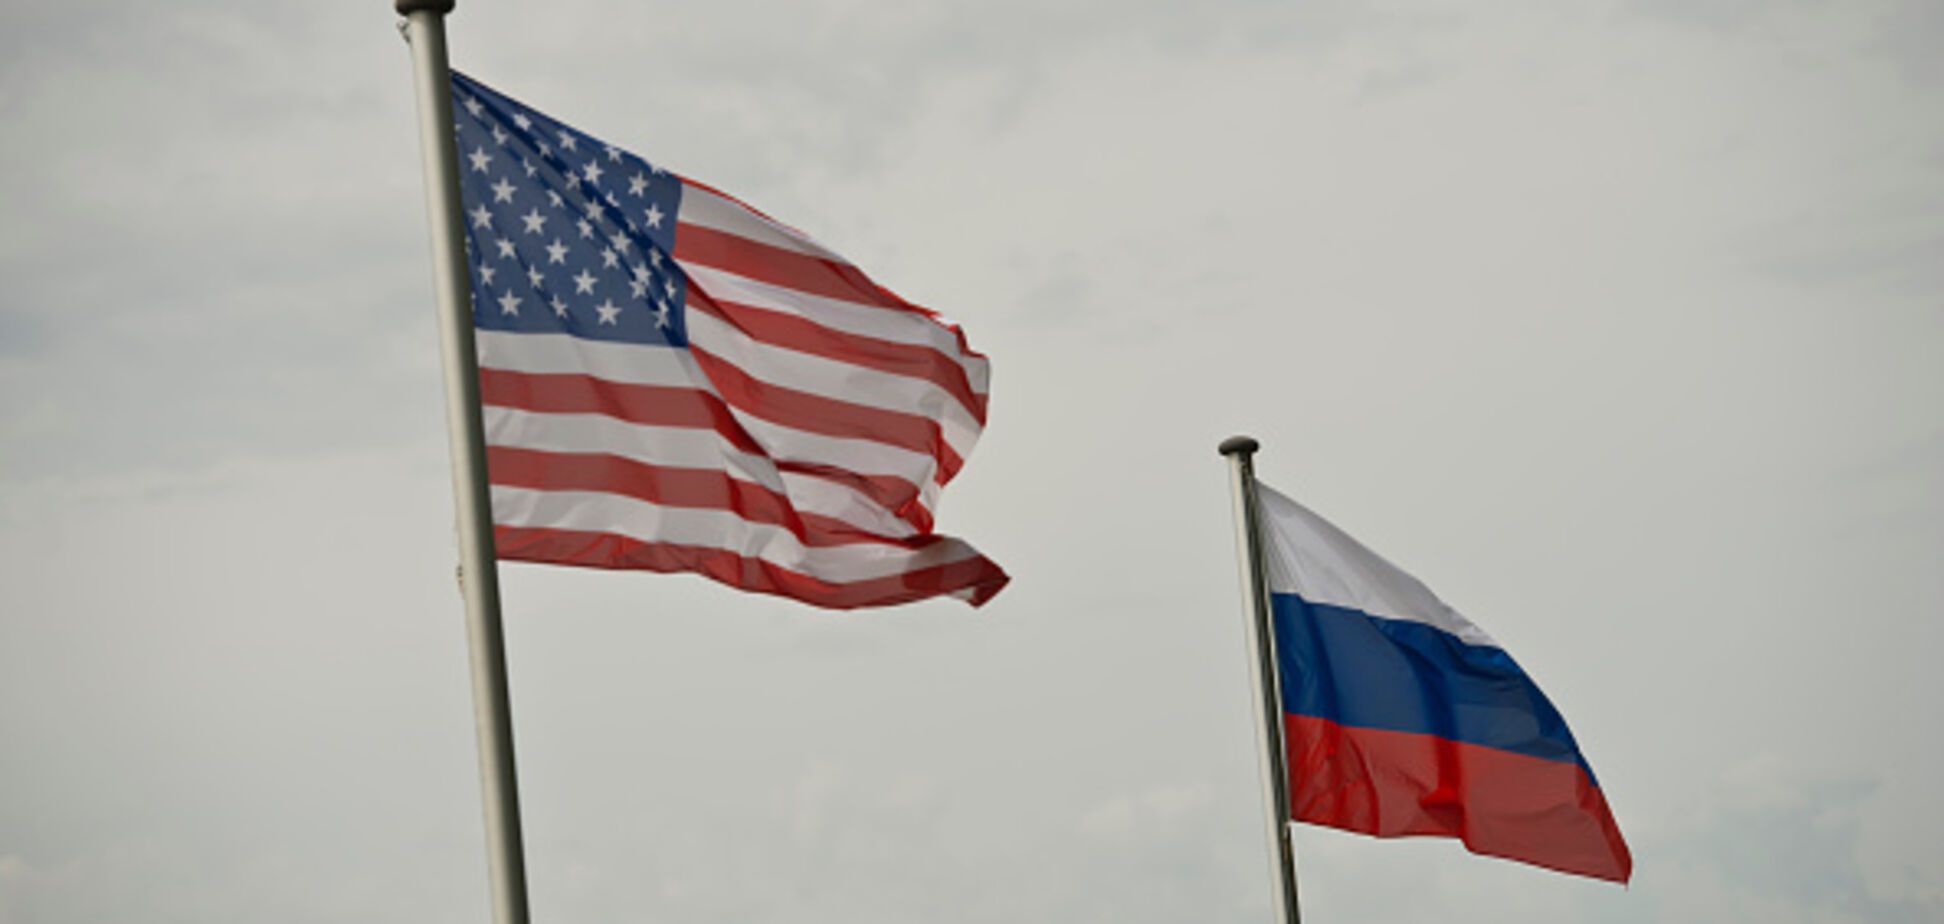 Не хотим убивать русских: США заявили, что Россия провоцирует схватку